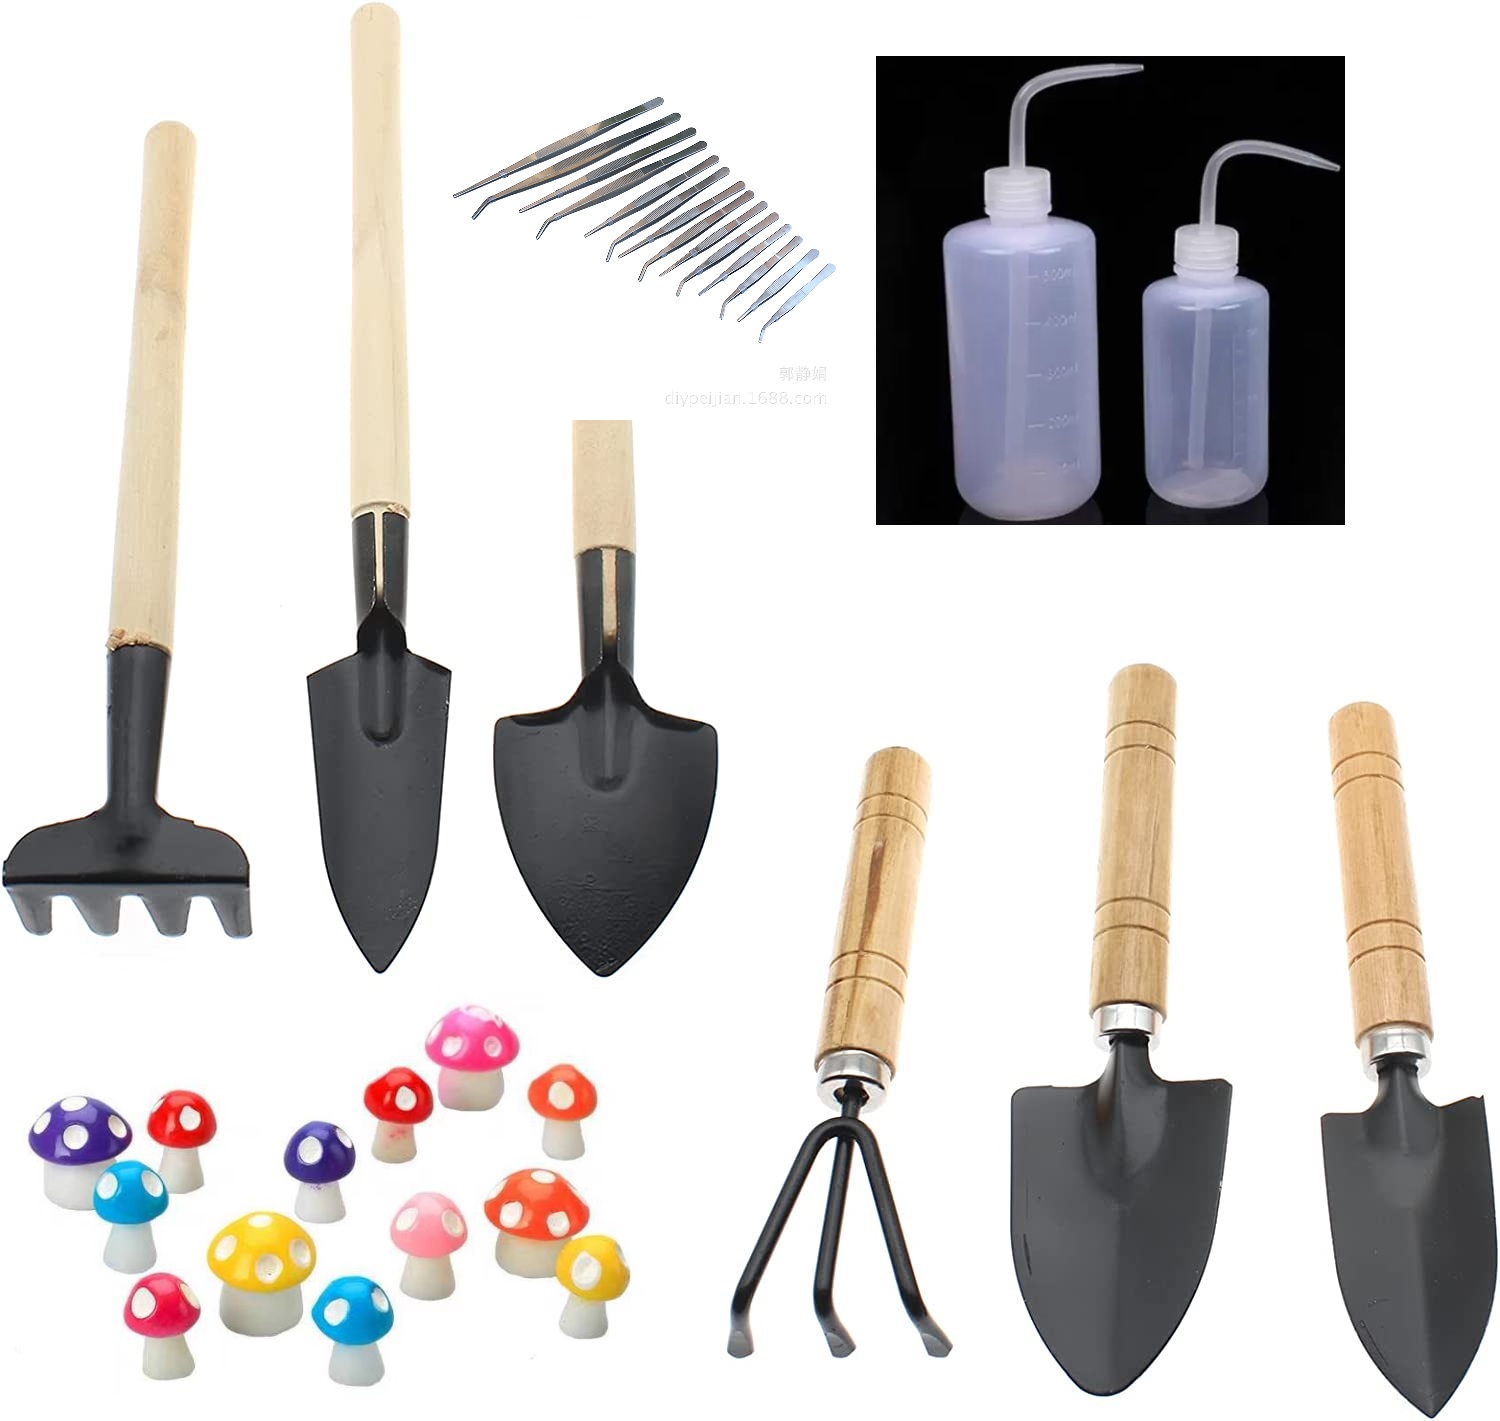 Mini les combinaisons de jardinage Kit d'outils de jardinage R￢teau ￠ pellets Balcon Gandon en bois Pheillette Rake Resin Champignon incurv￩ Bouteille ￠ bouteilles arroscomes